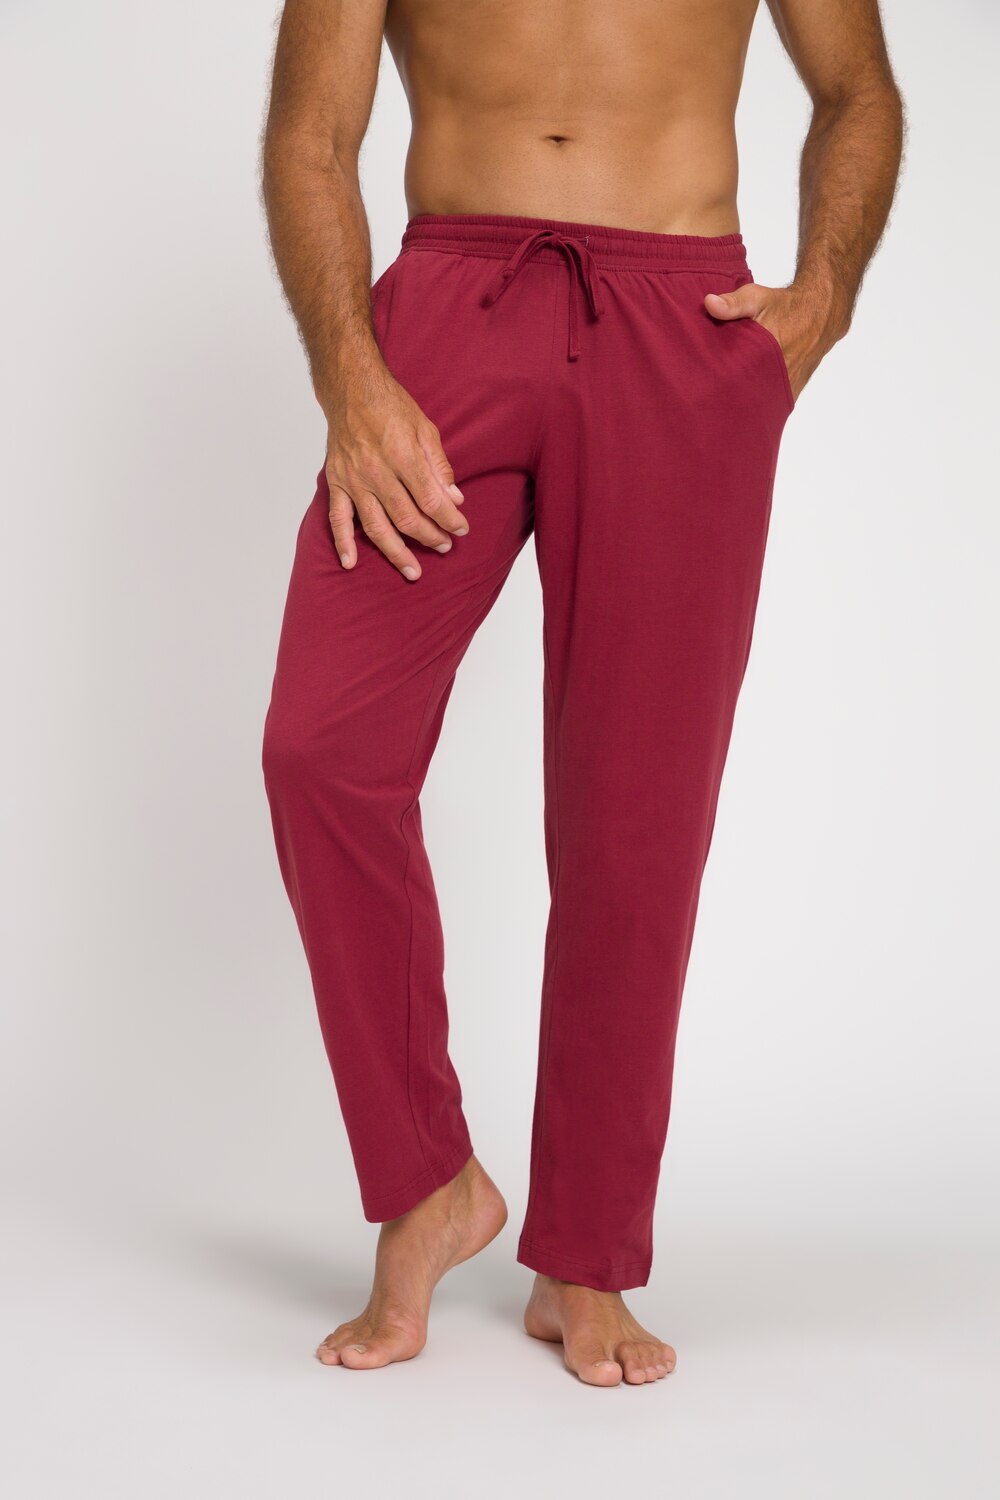 Grote Maten pyjamabroek, Heren, rood, Maat: L, JP1880